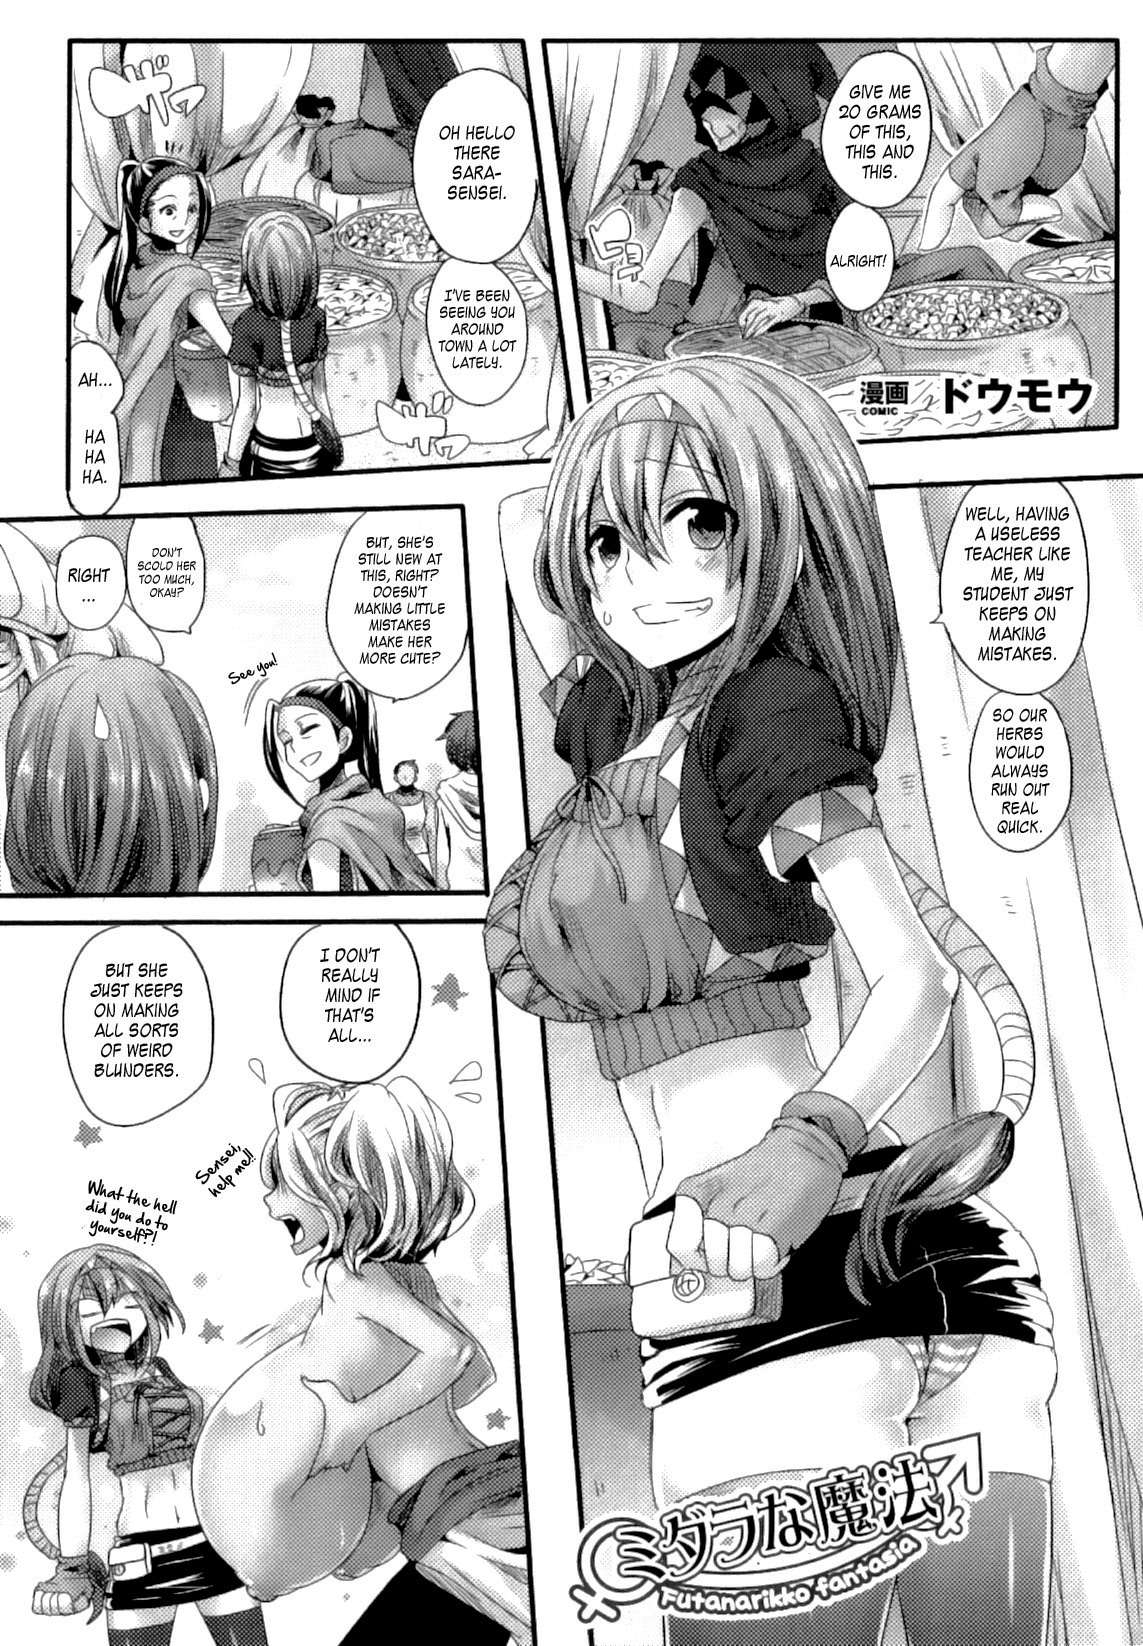 Reading Erotic Magic Original Hentai By 1 Erotic Magic [oneshot] Page 1 Hentai Manga Online